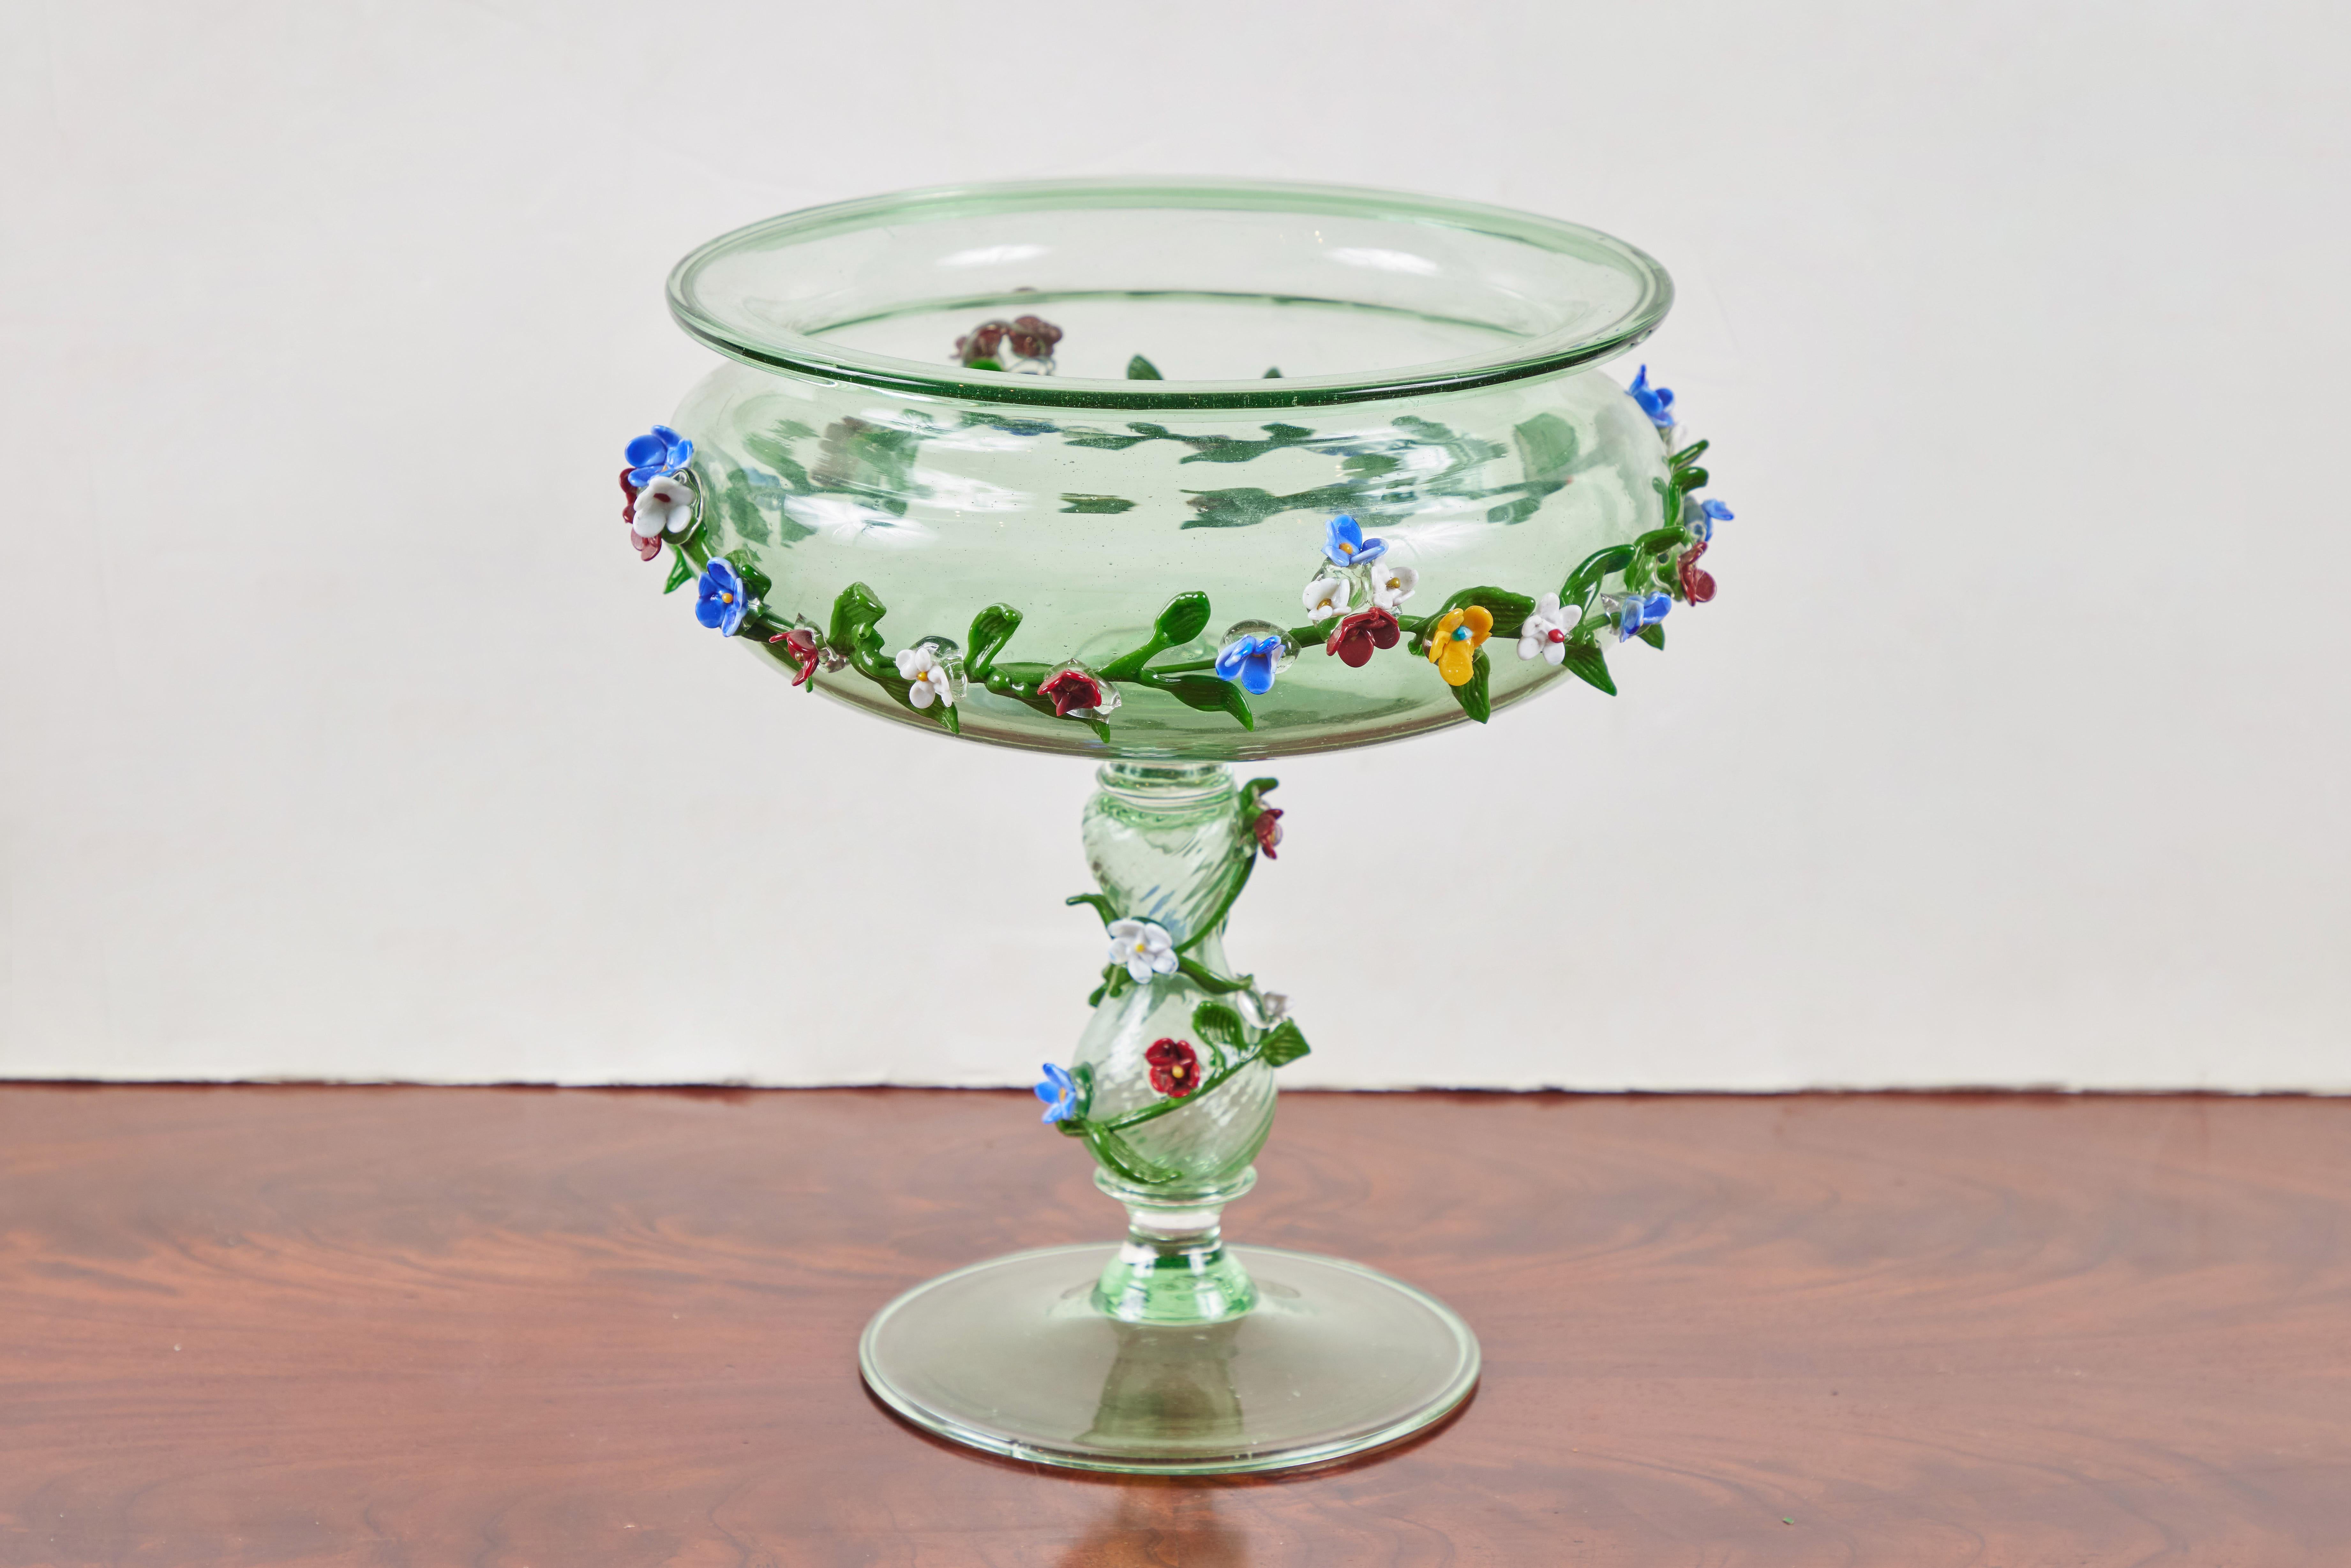 Ravissante tazza en verre de Murano, soufflée à la main vers 1920, d'un vert frais et printanier. Le bol à lèvre est orné d'une guirlande en applique de fleurs et de feuilles formées individuellement dans une variété de couleurs qui s'enroule le